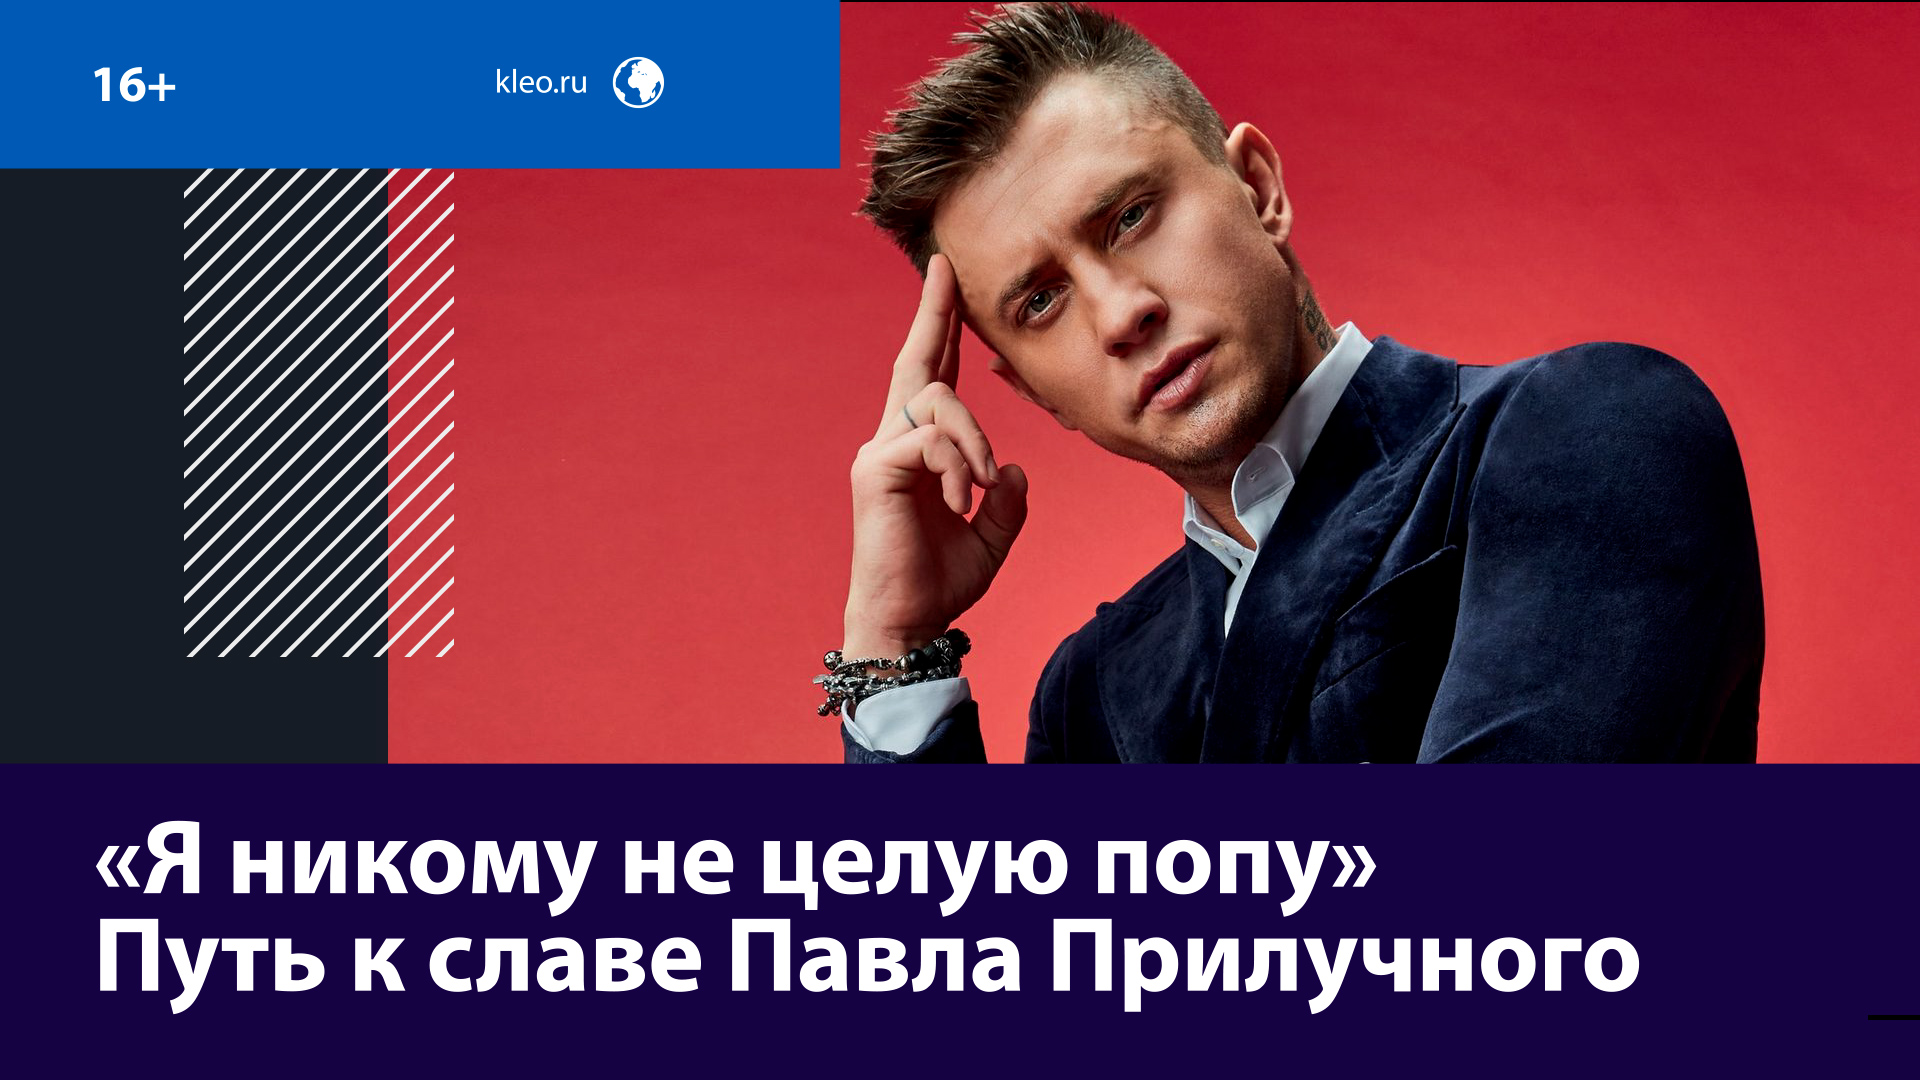 Павел Прилучный — злопамятный? — Москва FM